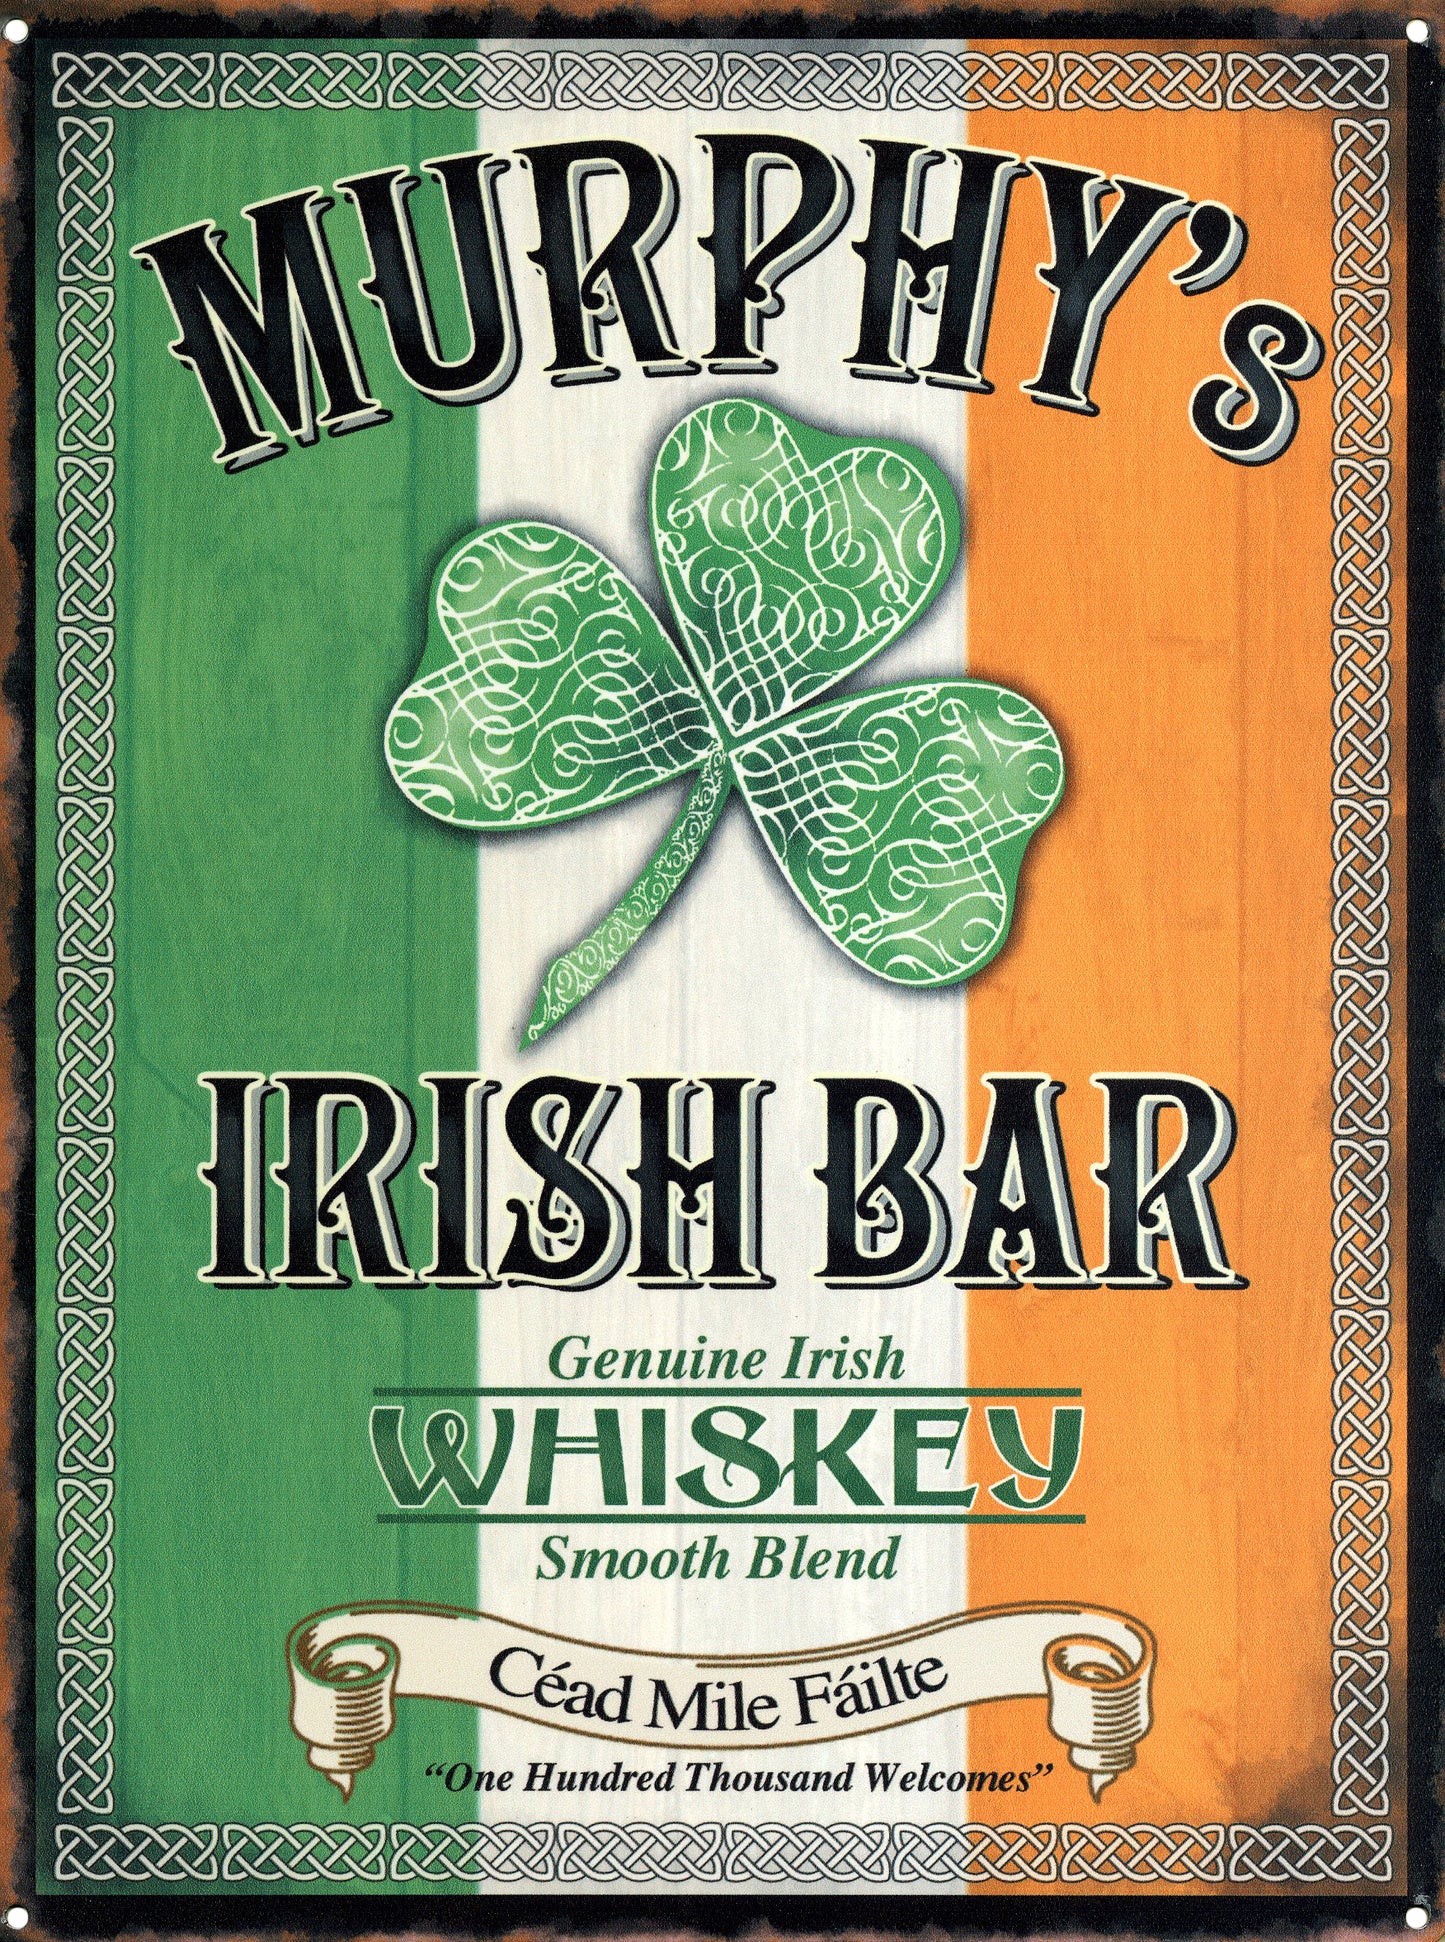 Murphy's Irish Bar